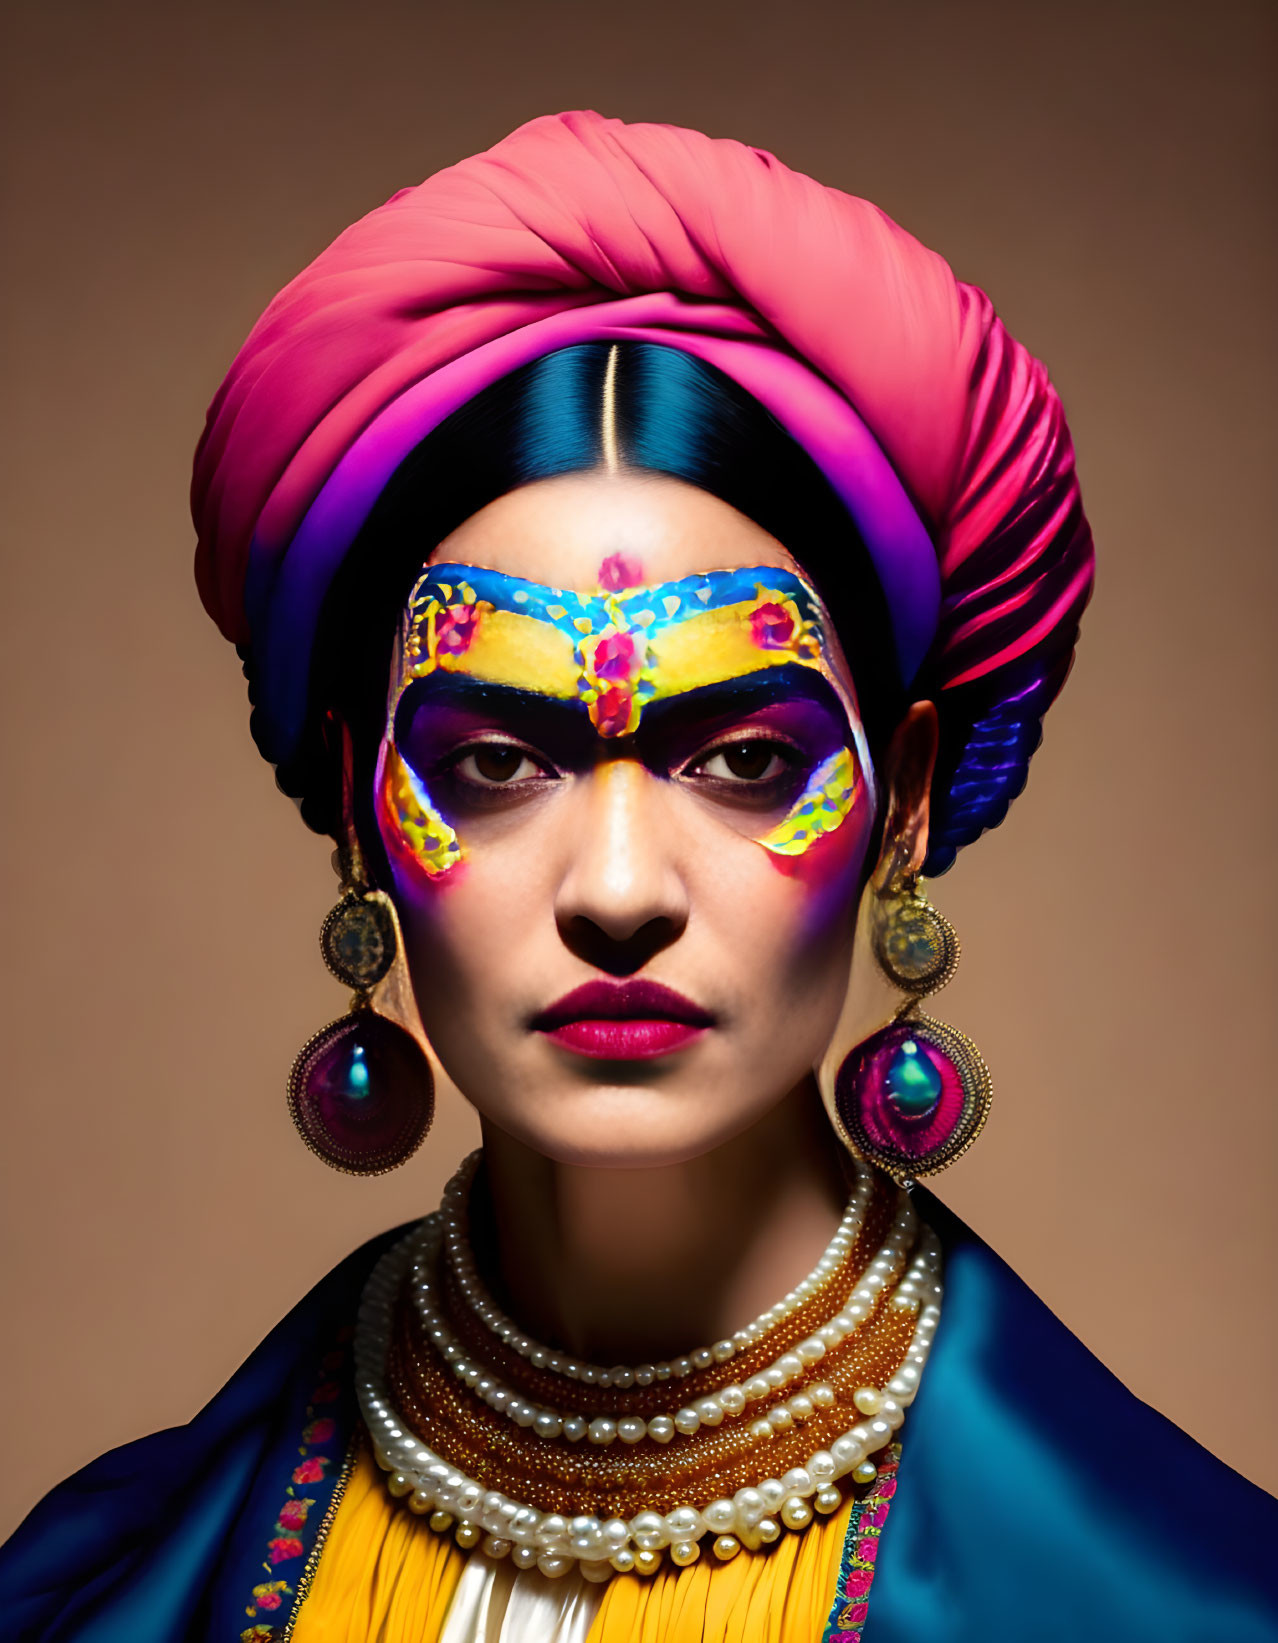 Frida Kahlo style portrait